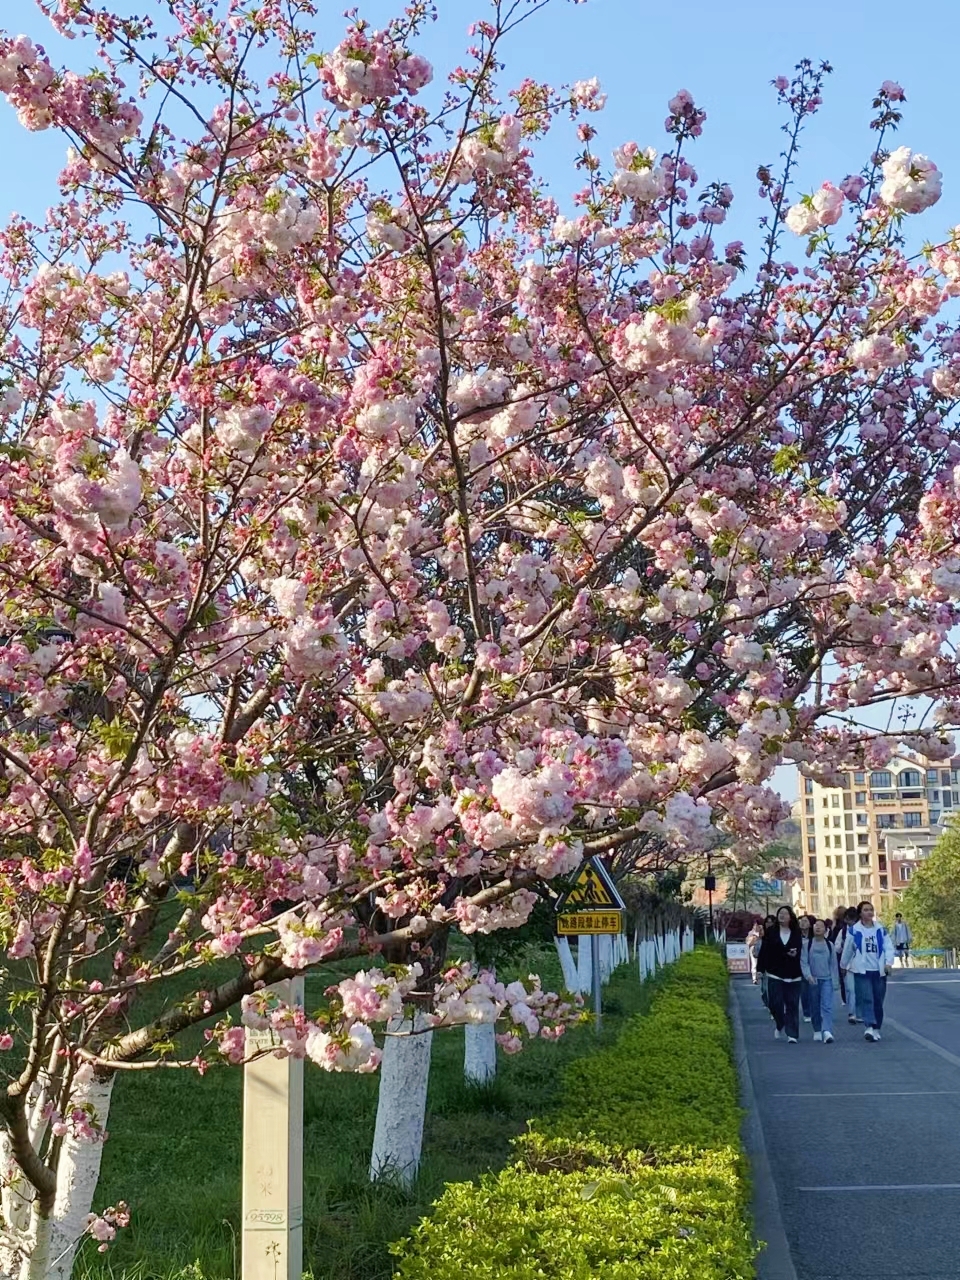 春风有信，花开有期，所有美好都在路上，校园里的花开了，攒满了一个冬天的期待降临了。